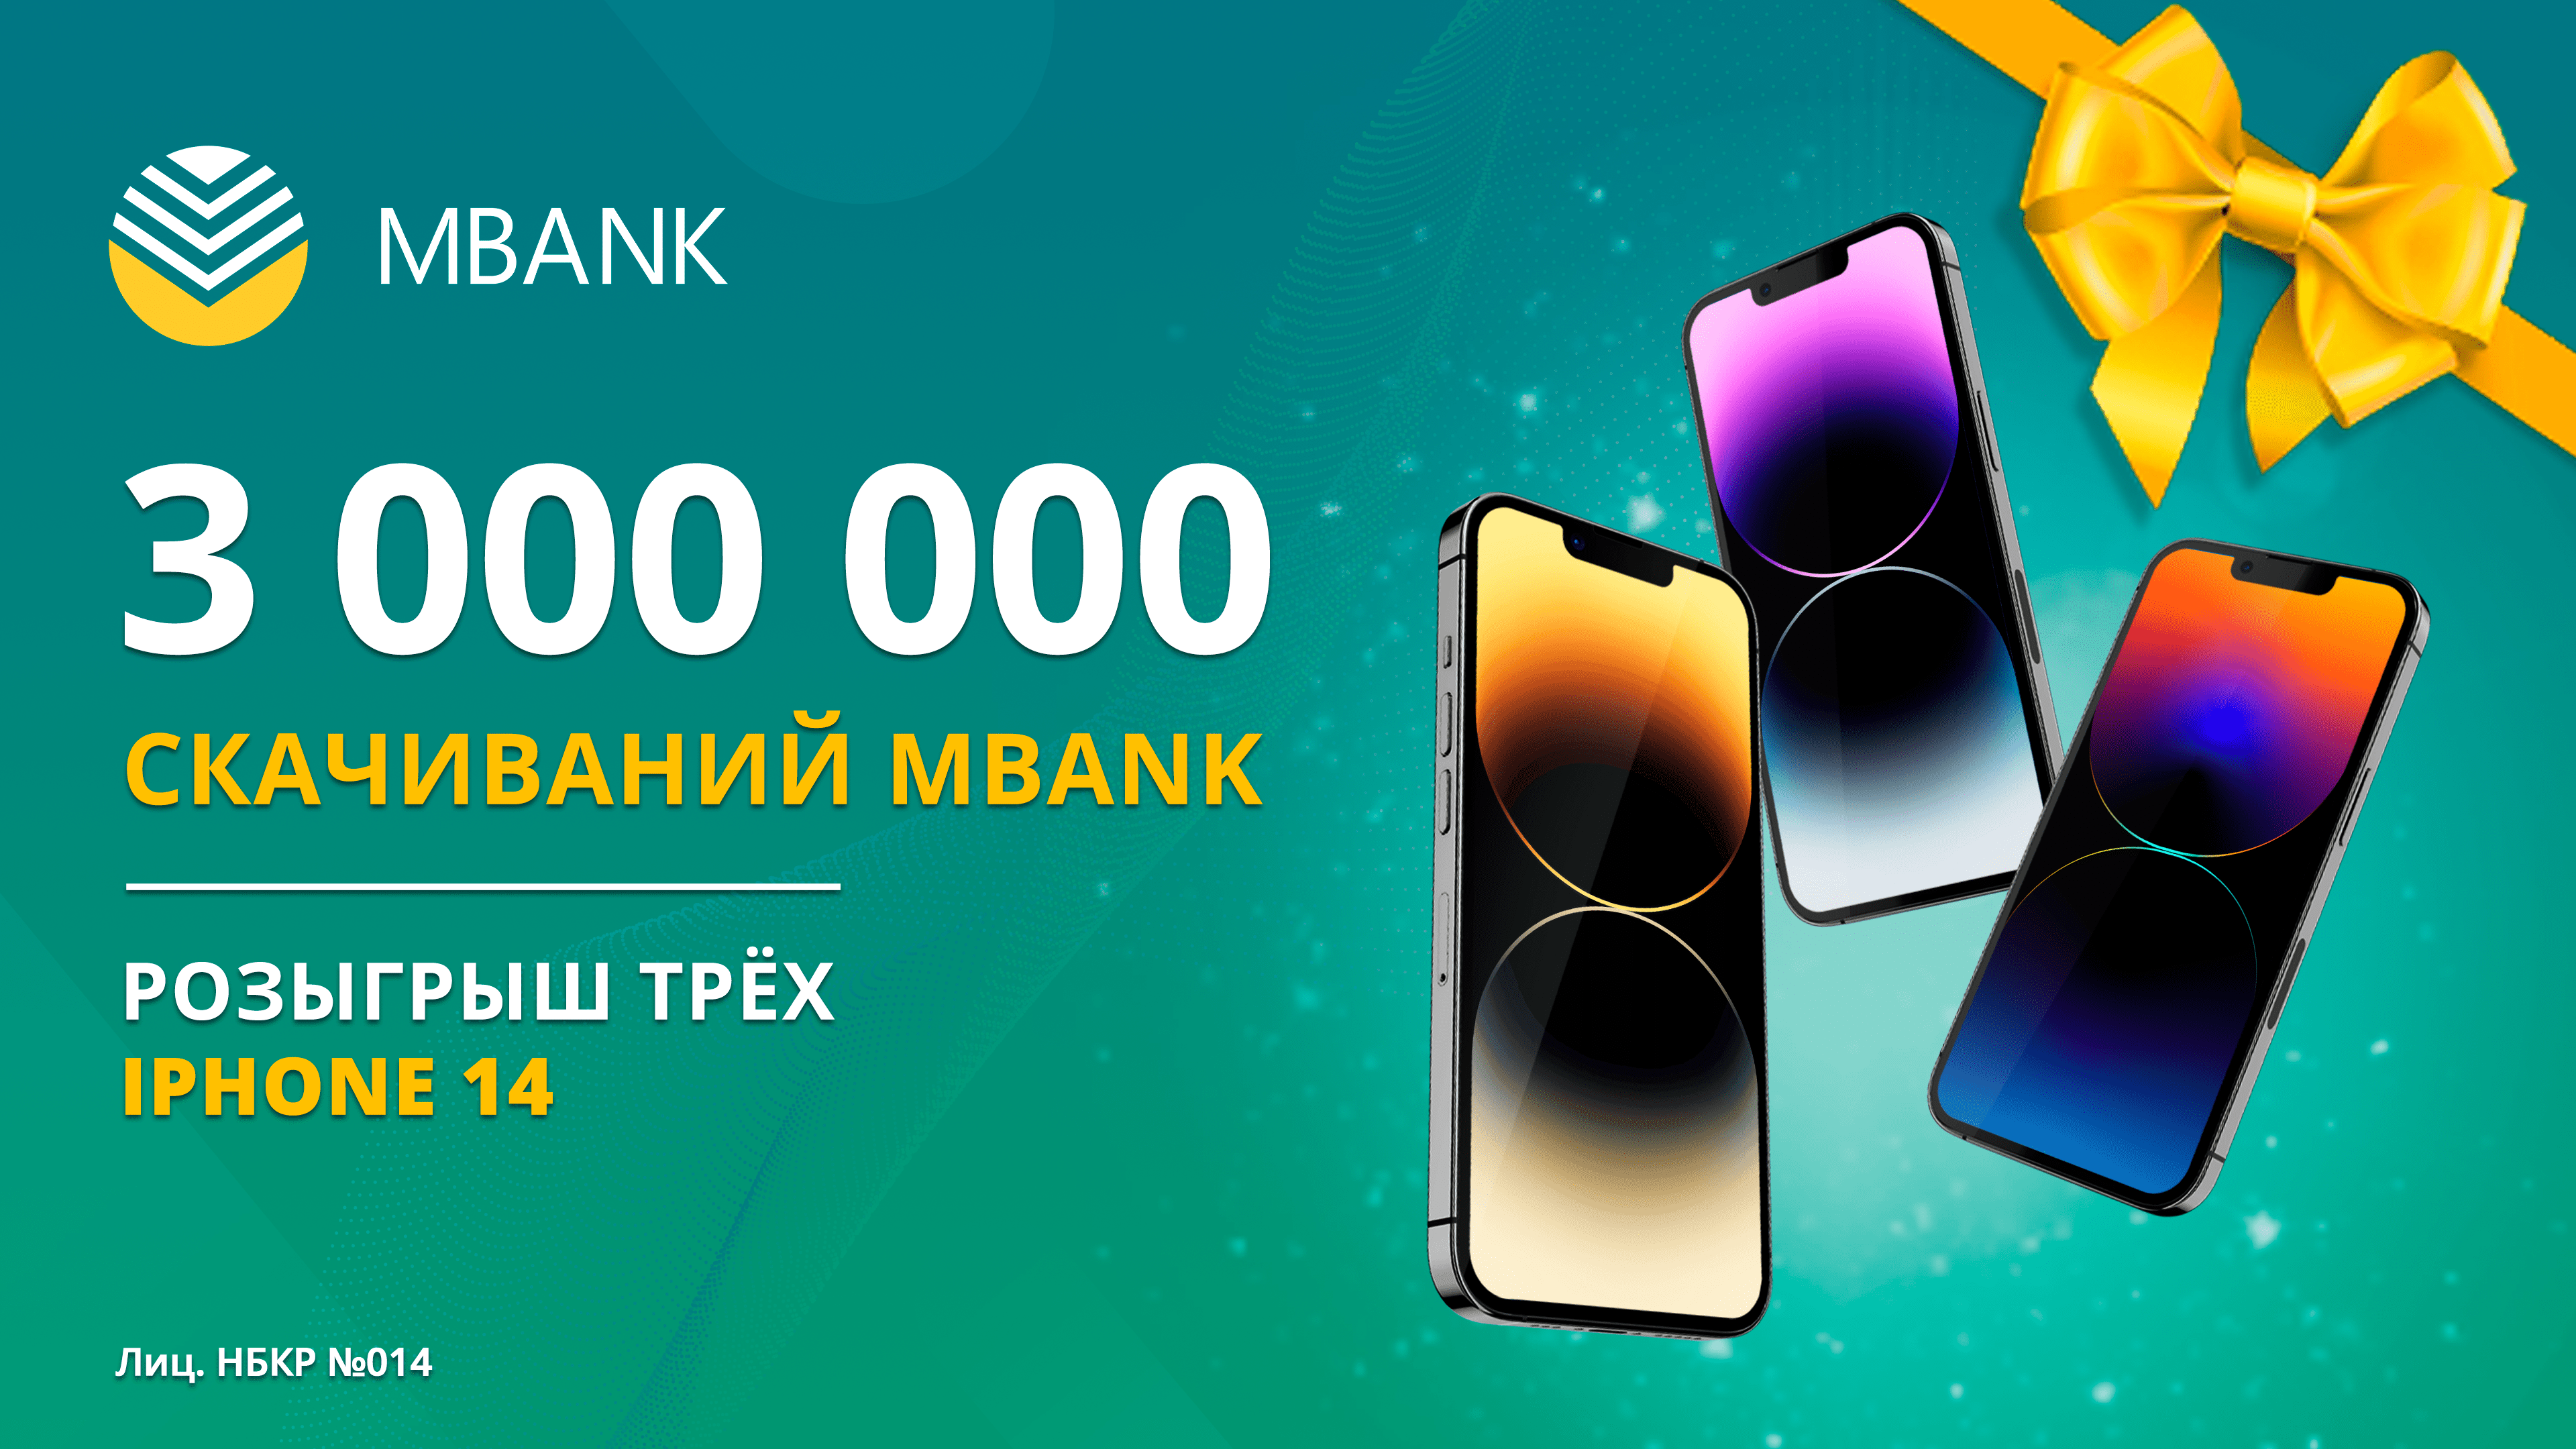 Население Кыргызстана достигло 7 миллионов человек, а MBANK скачали более 3 миллиона раз!